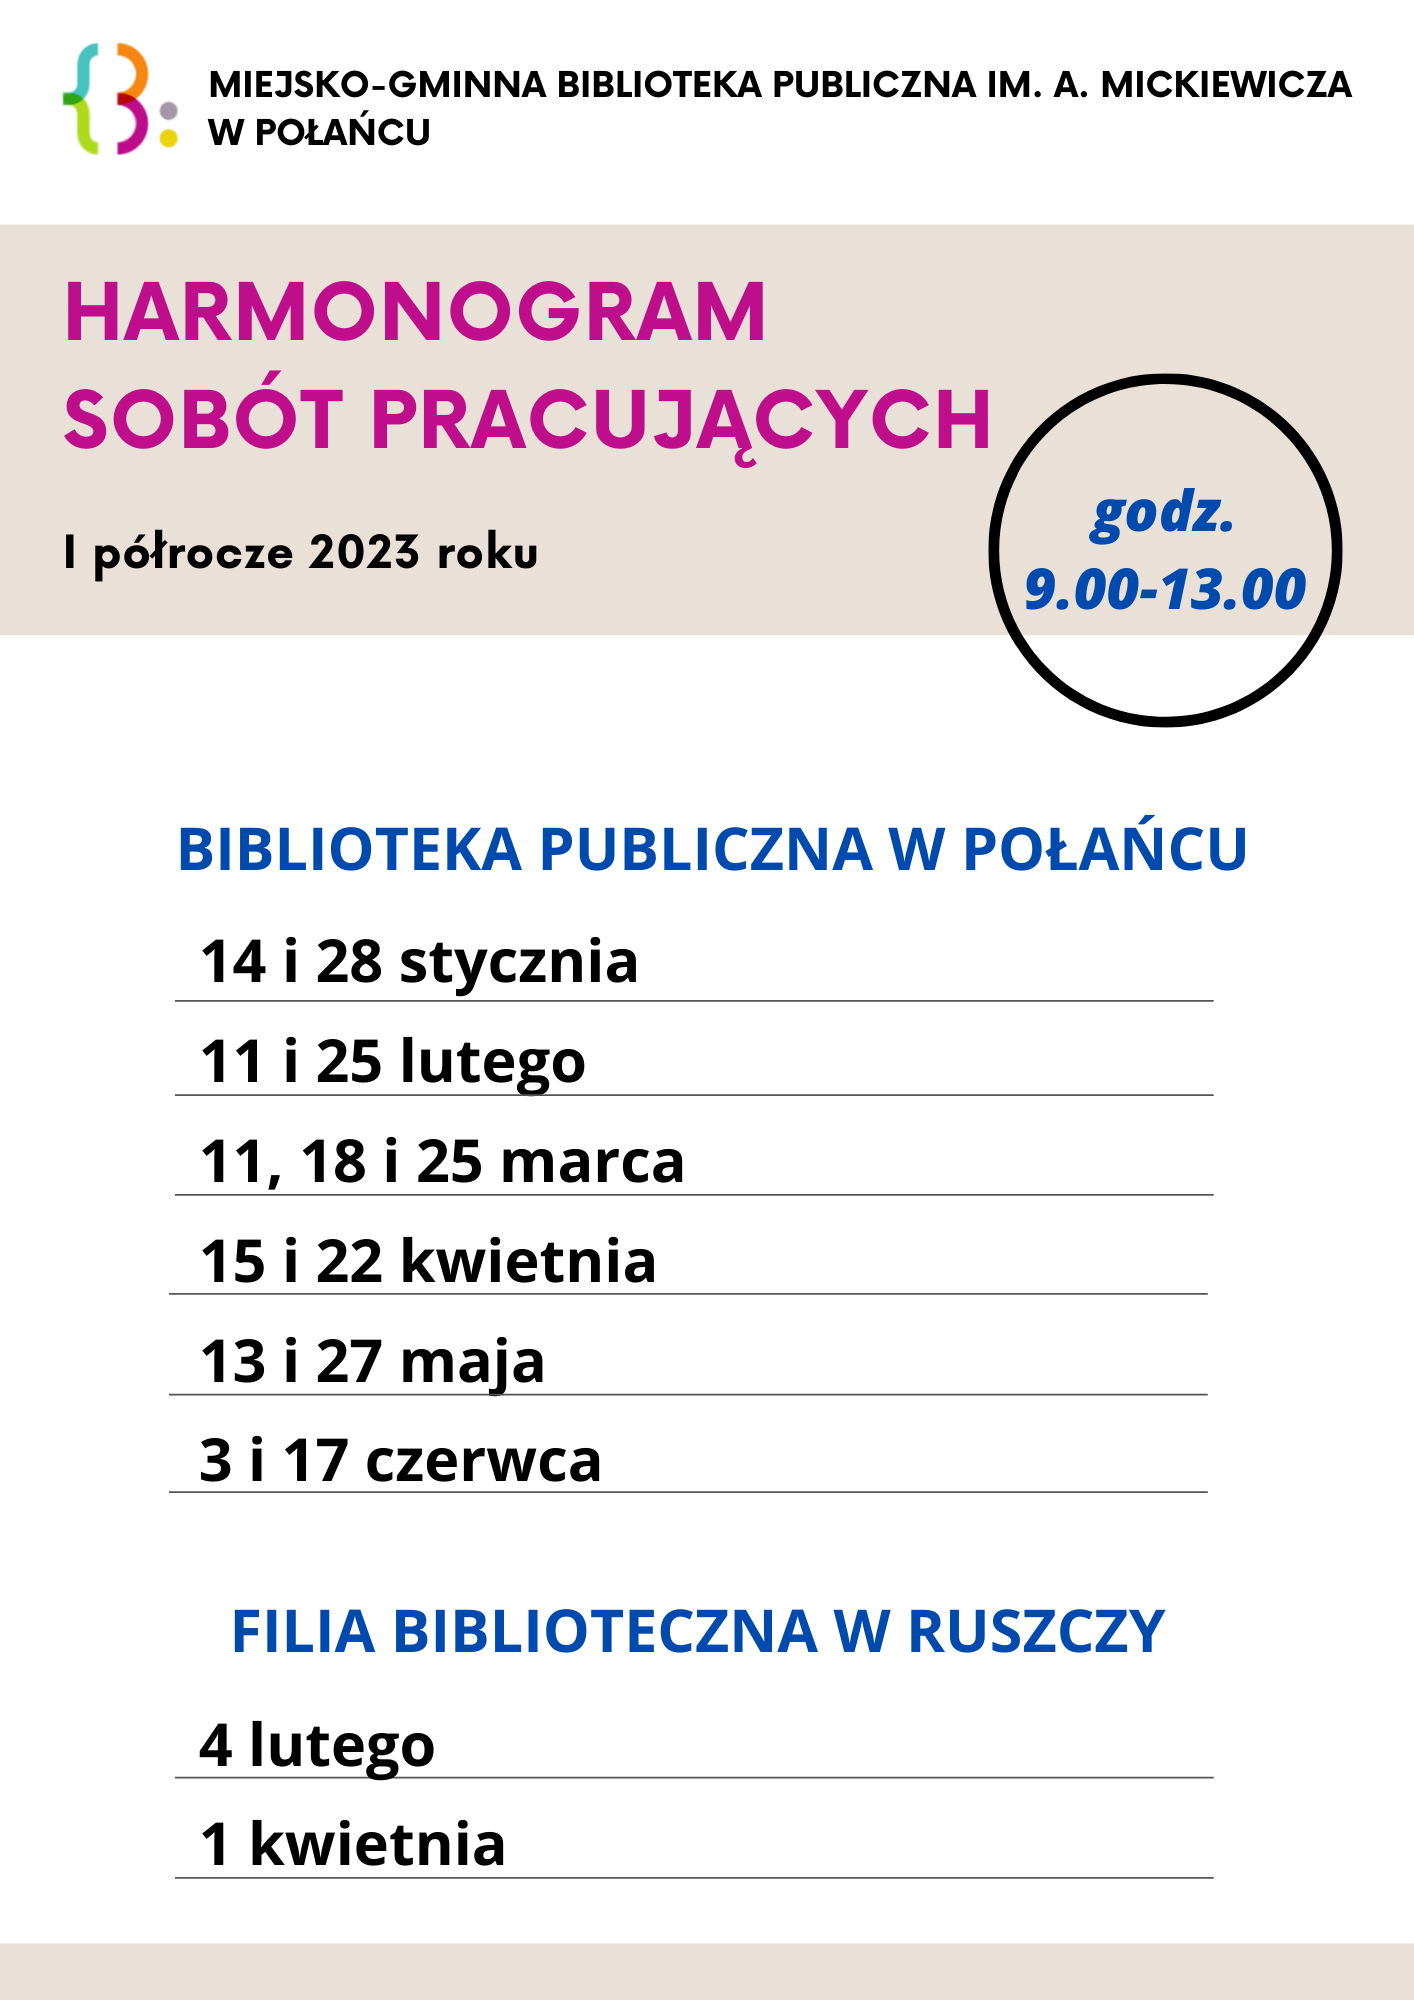 harmonogram_sobót_pracujacych_w_bibliotece_w_połańcu_5.png